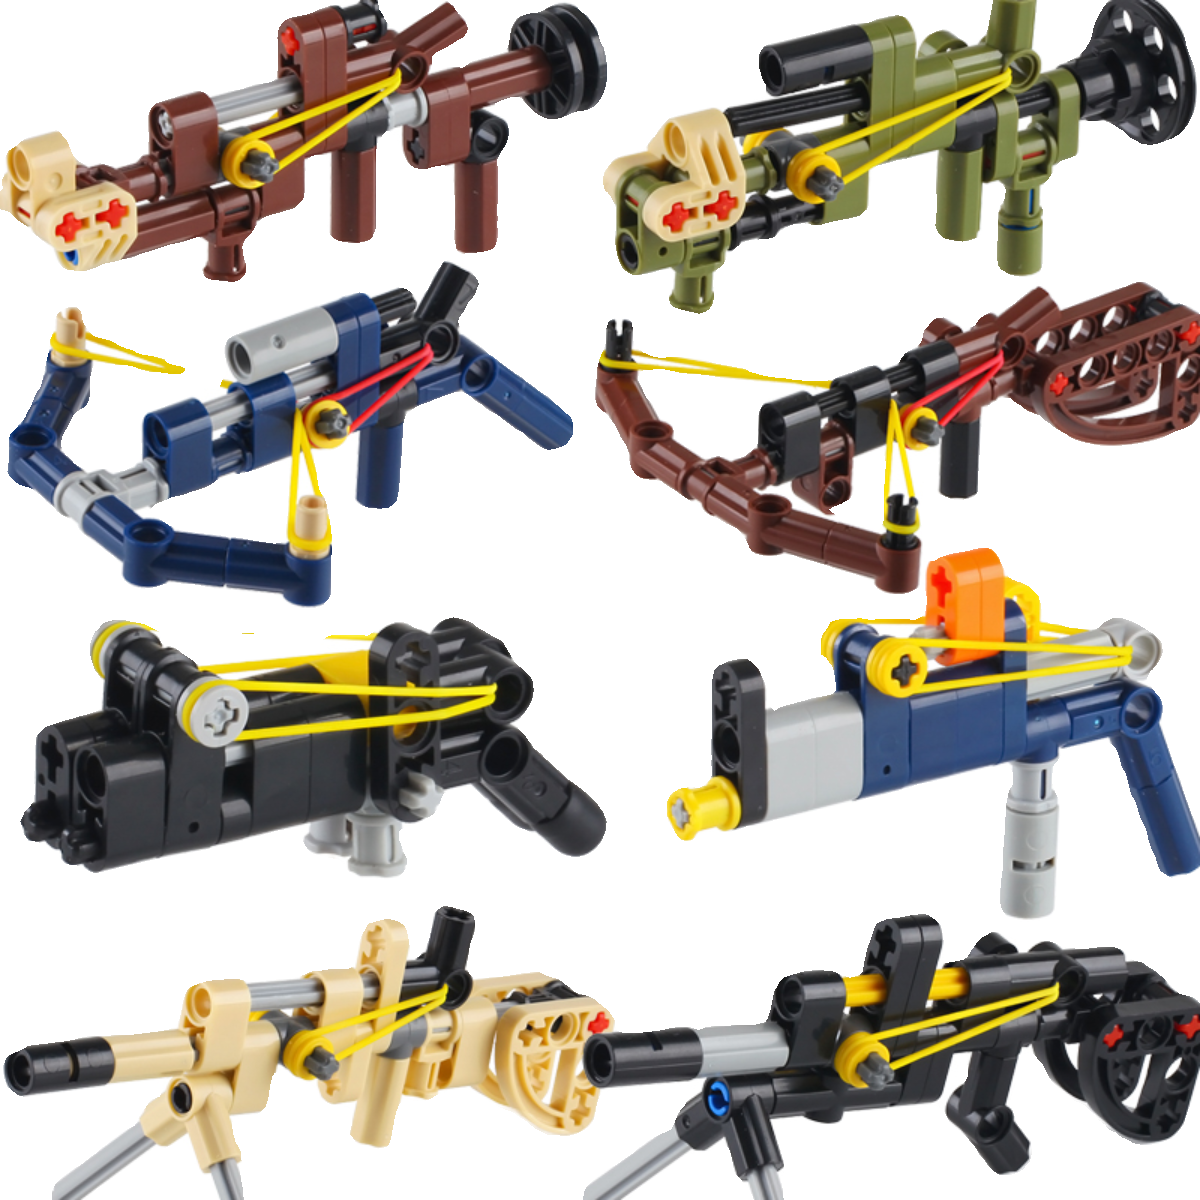 可发射皮筋冲锋枪机枪火箭筒弓箭男孩子益智拼装积木军事模型玩具